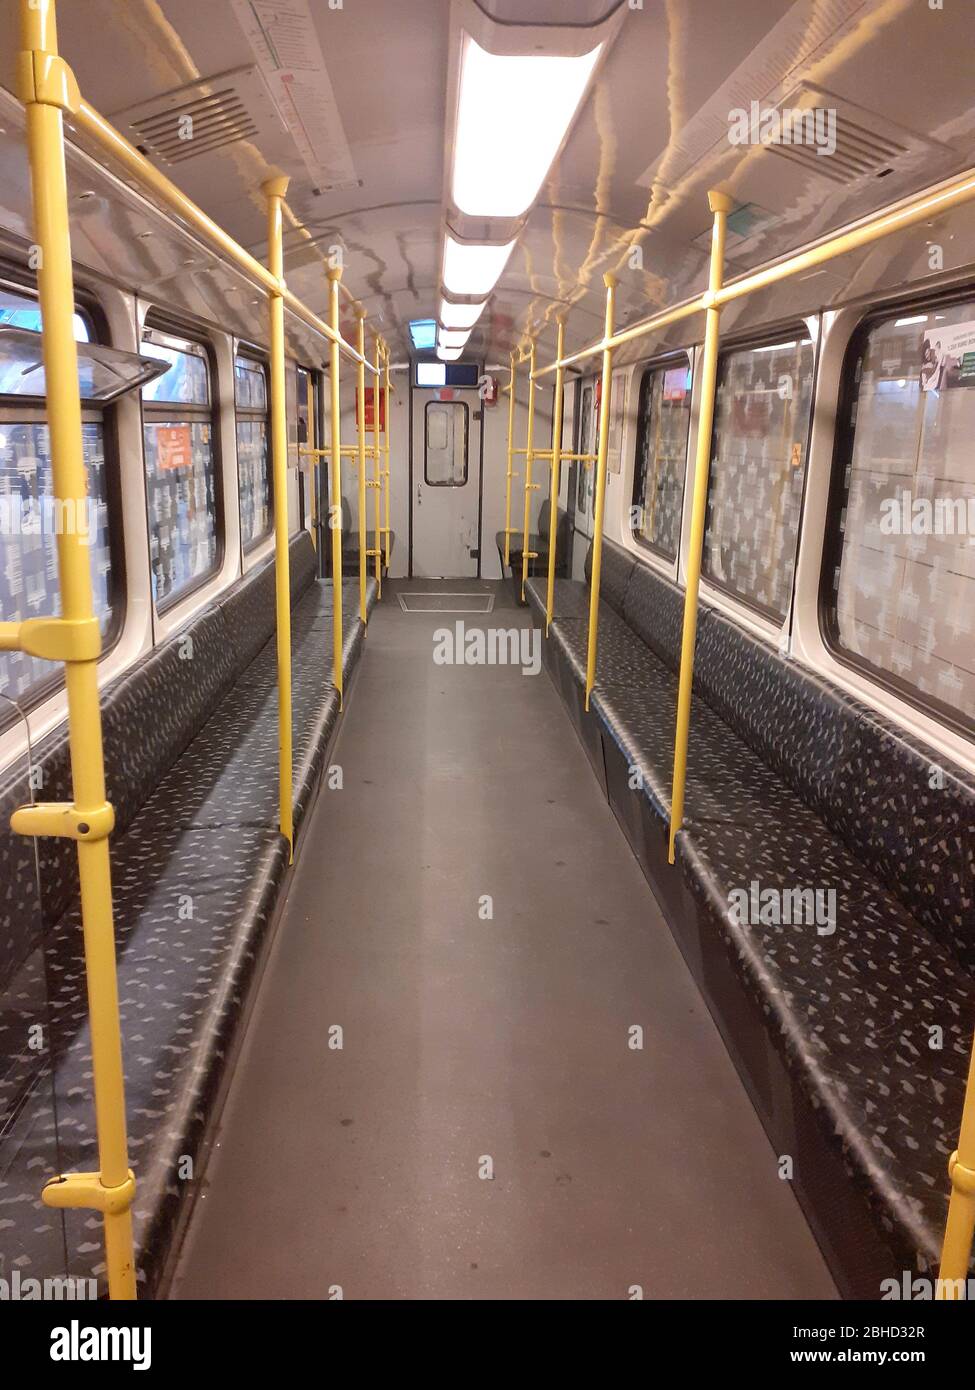 Ein verlassene U-Bahn-Wagen während der Sperrung wegen der Coronavirus-Pandemie, April 2020, Berlin, Deutschland Stockfoto